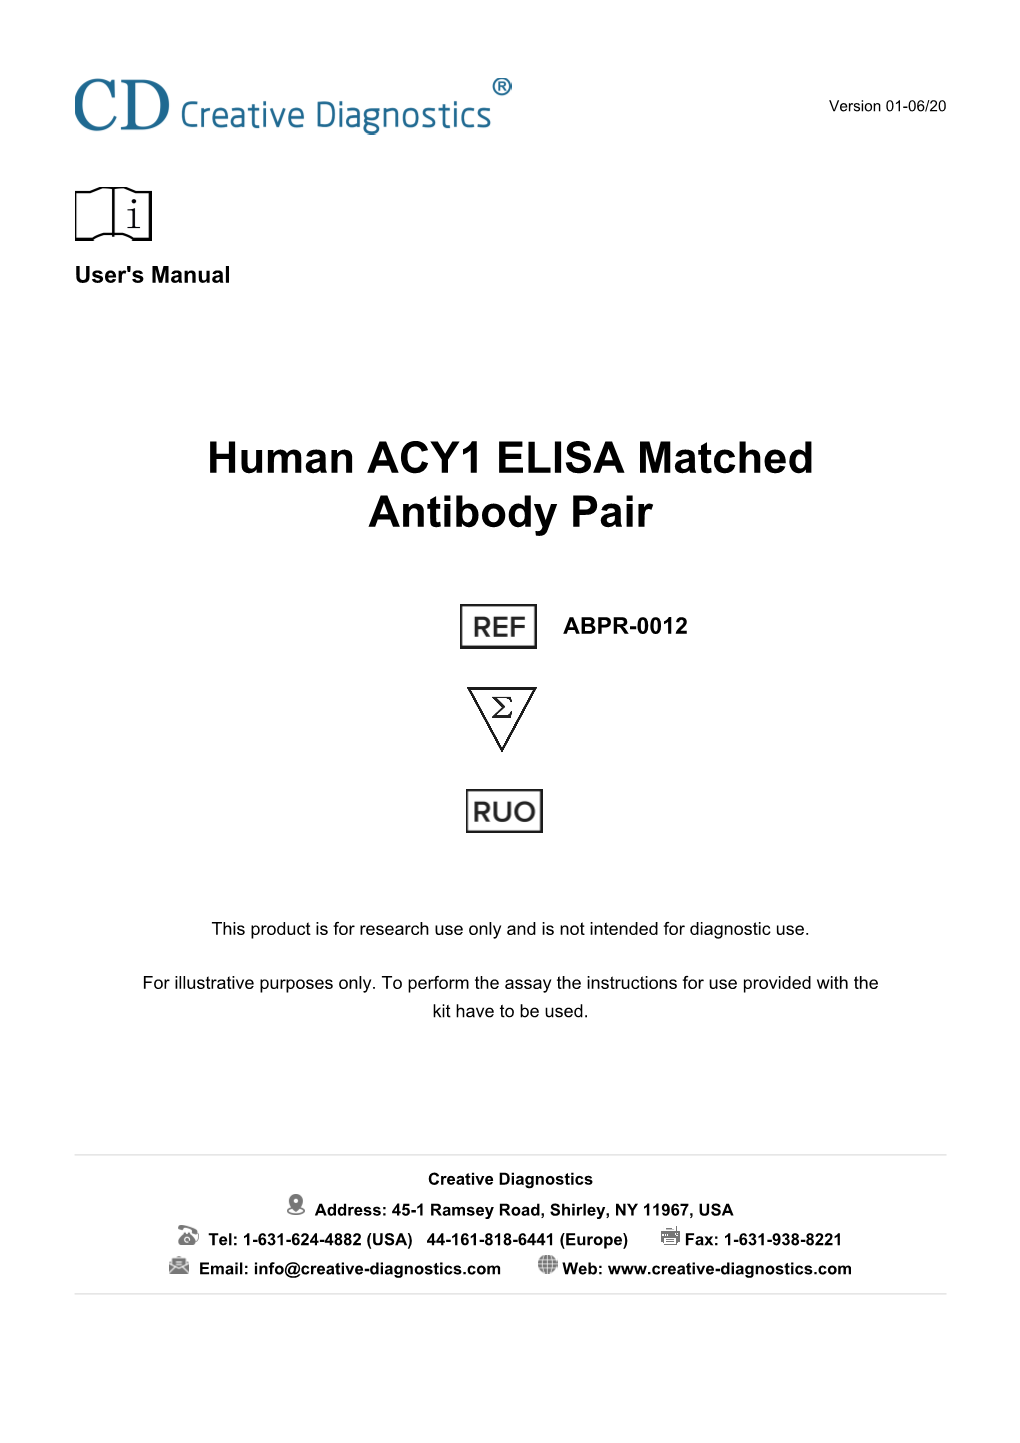 Human ACY1 ELISA Matched Antibody Pair